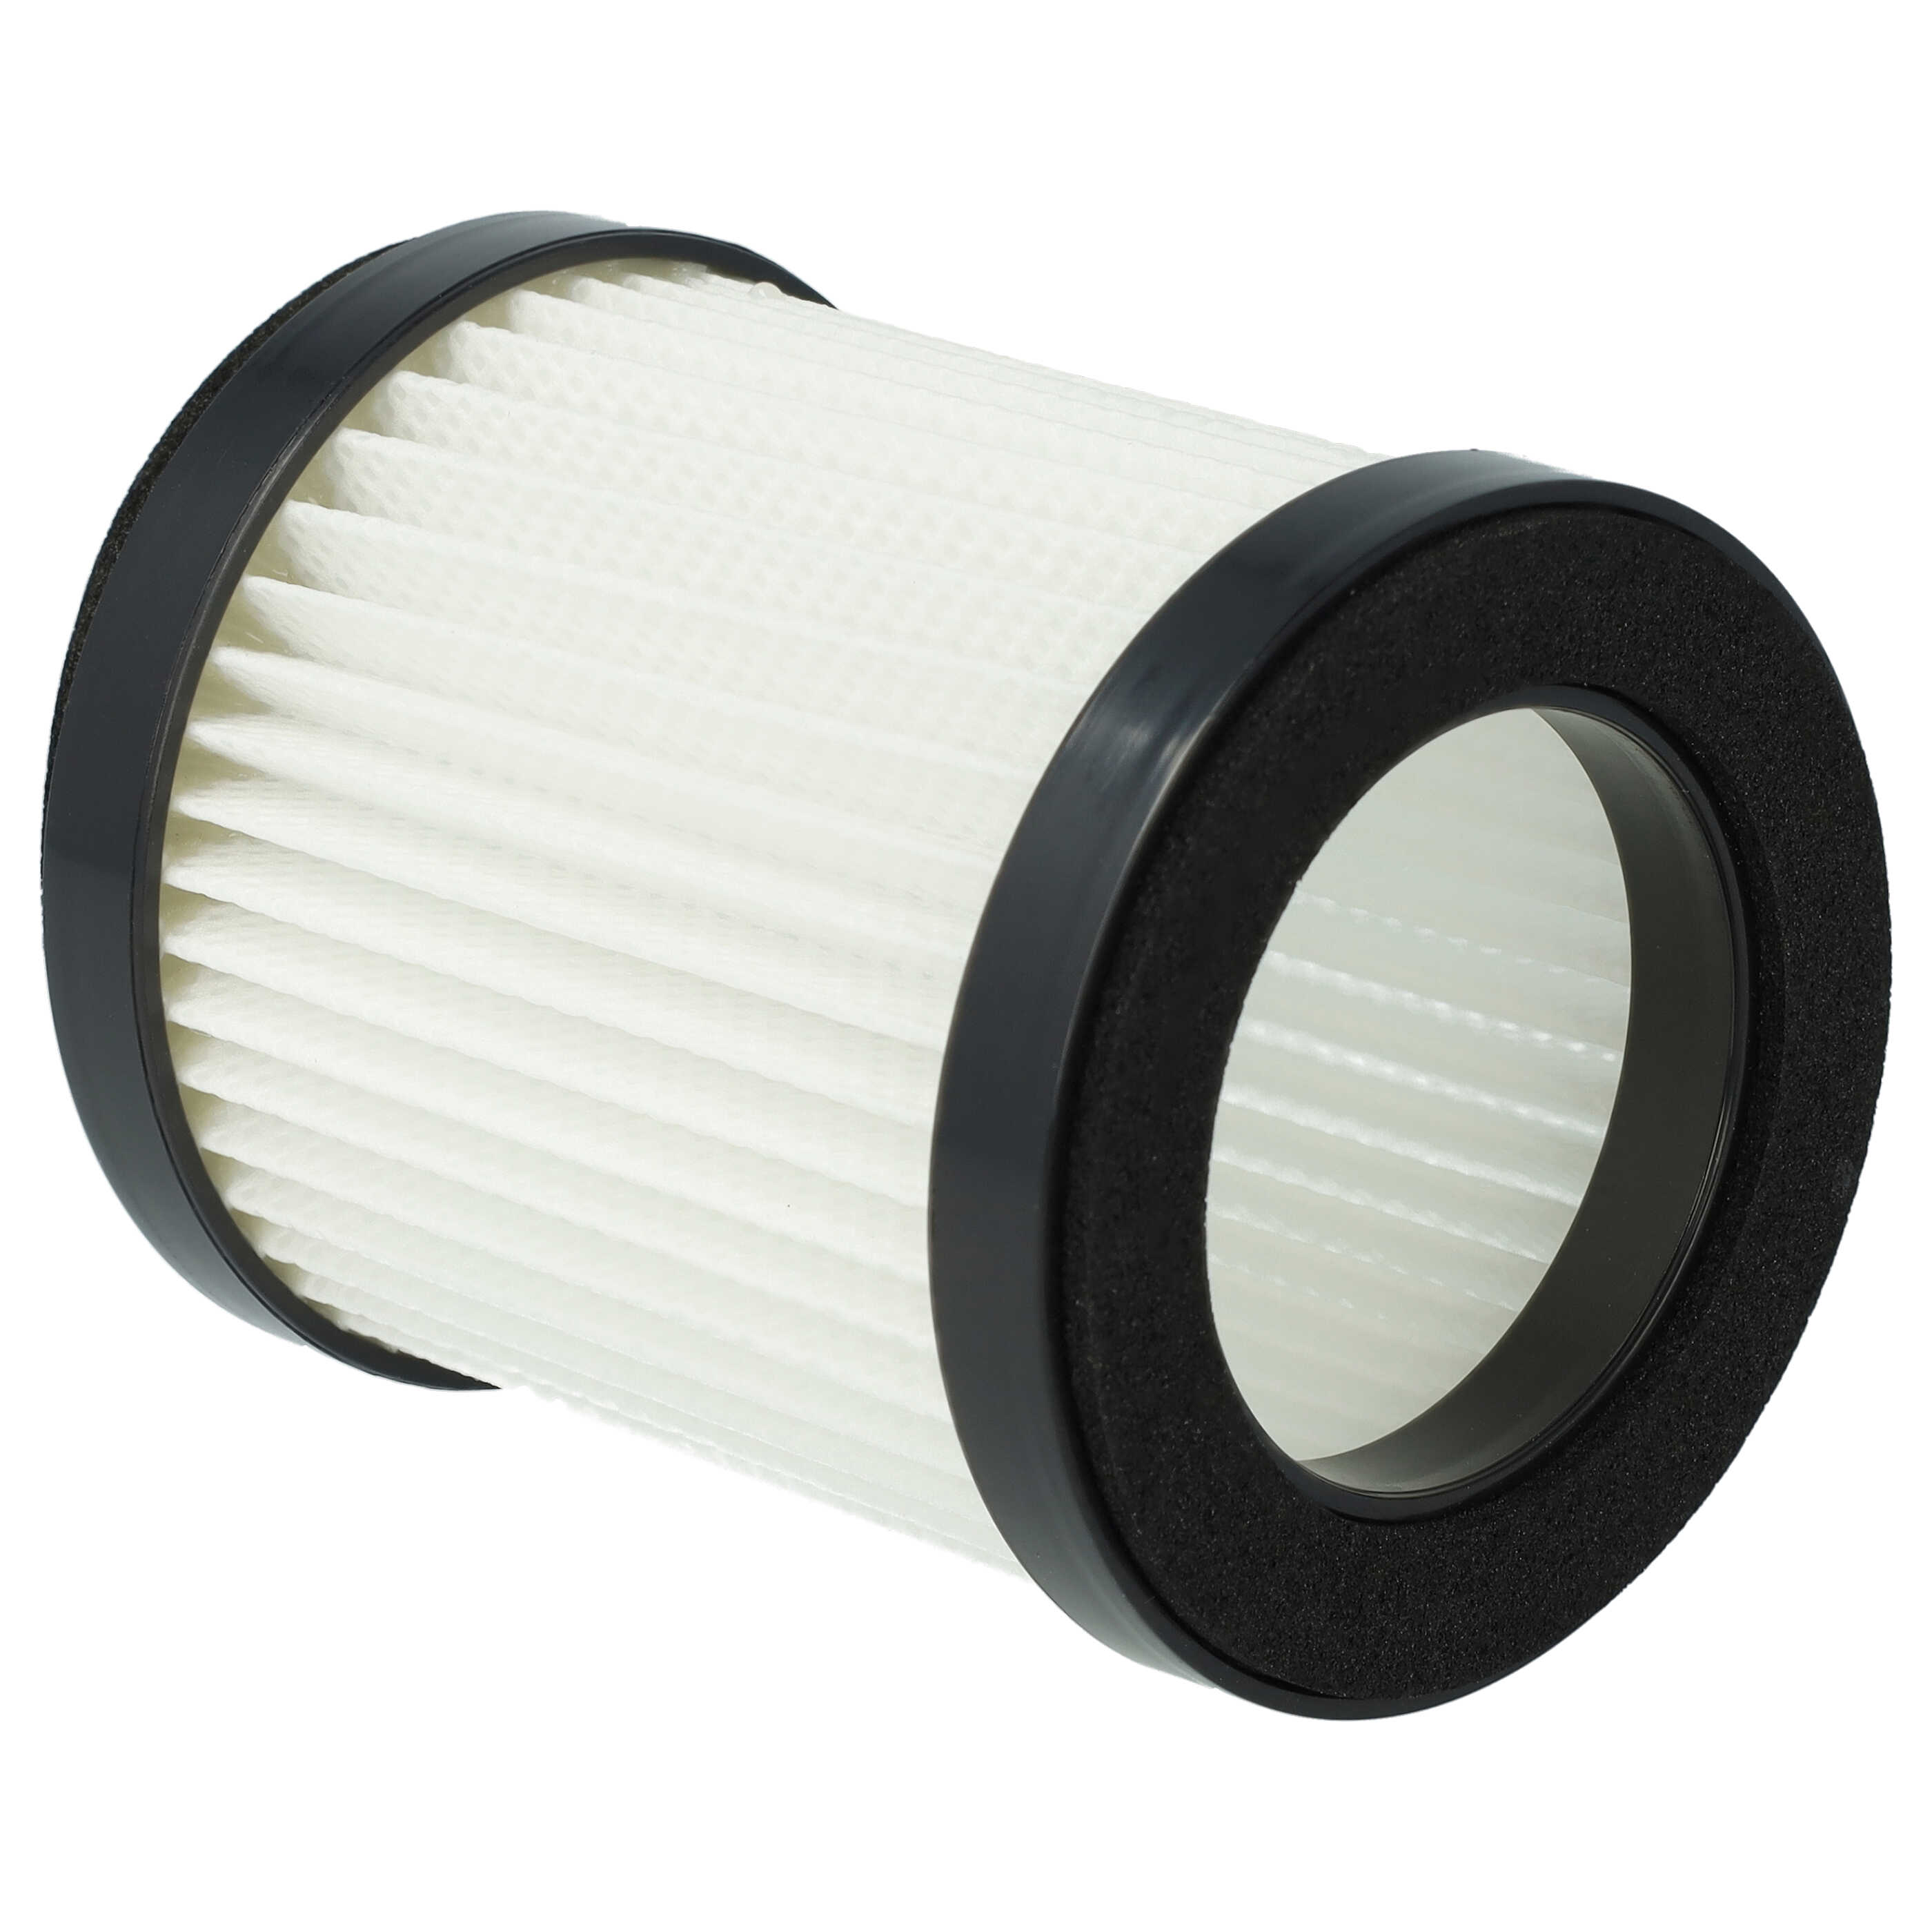 2x Filtre pour aspirateur Moosoo, Beldray XL-618A - filtre F8